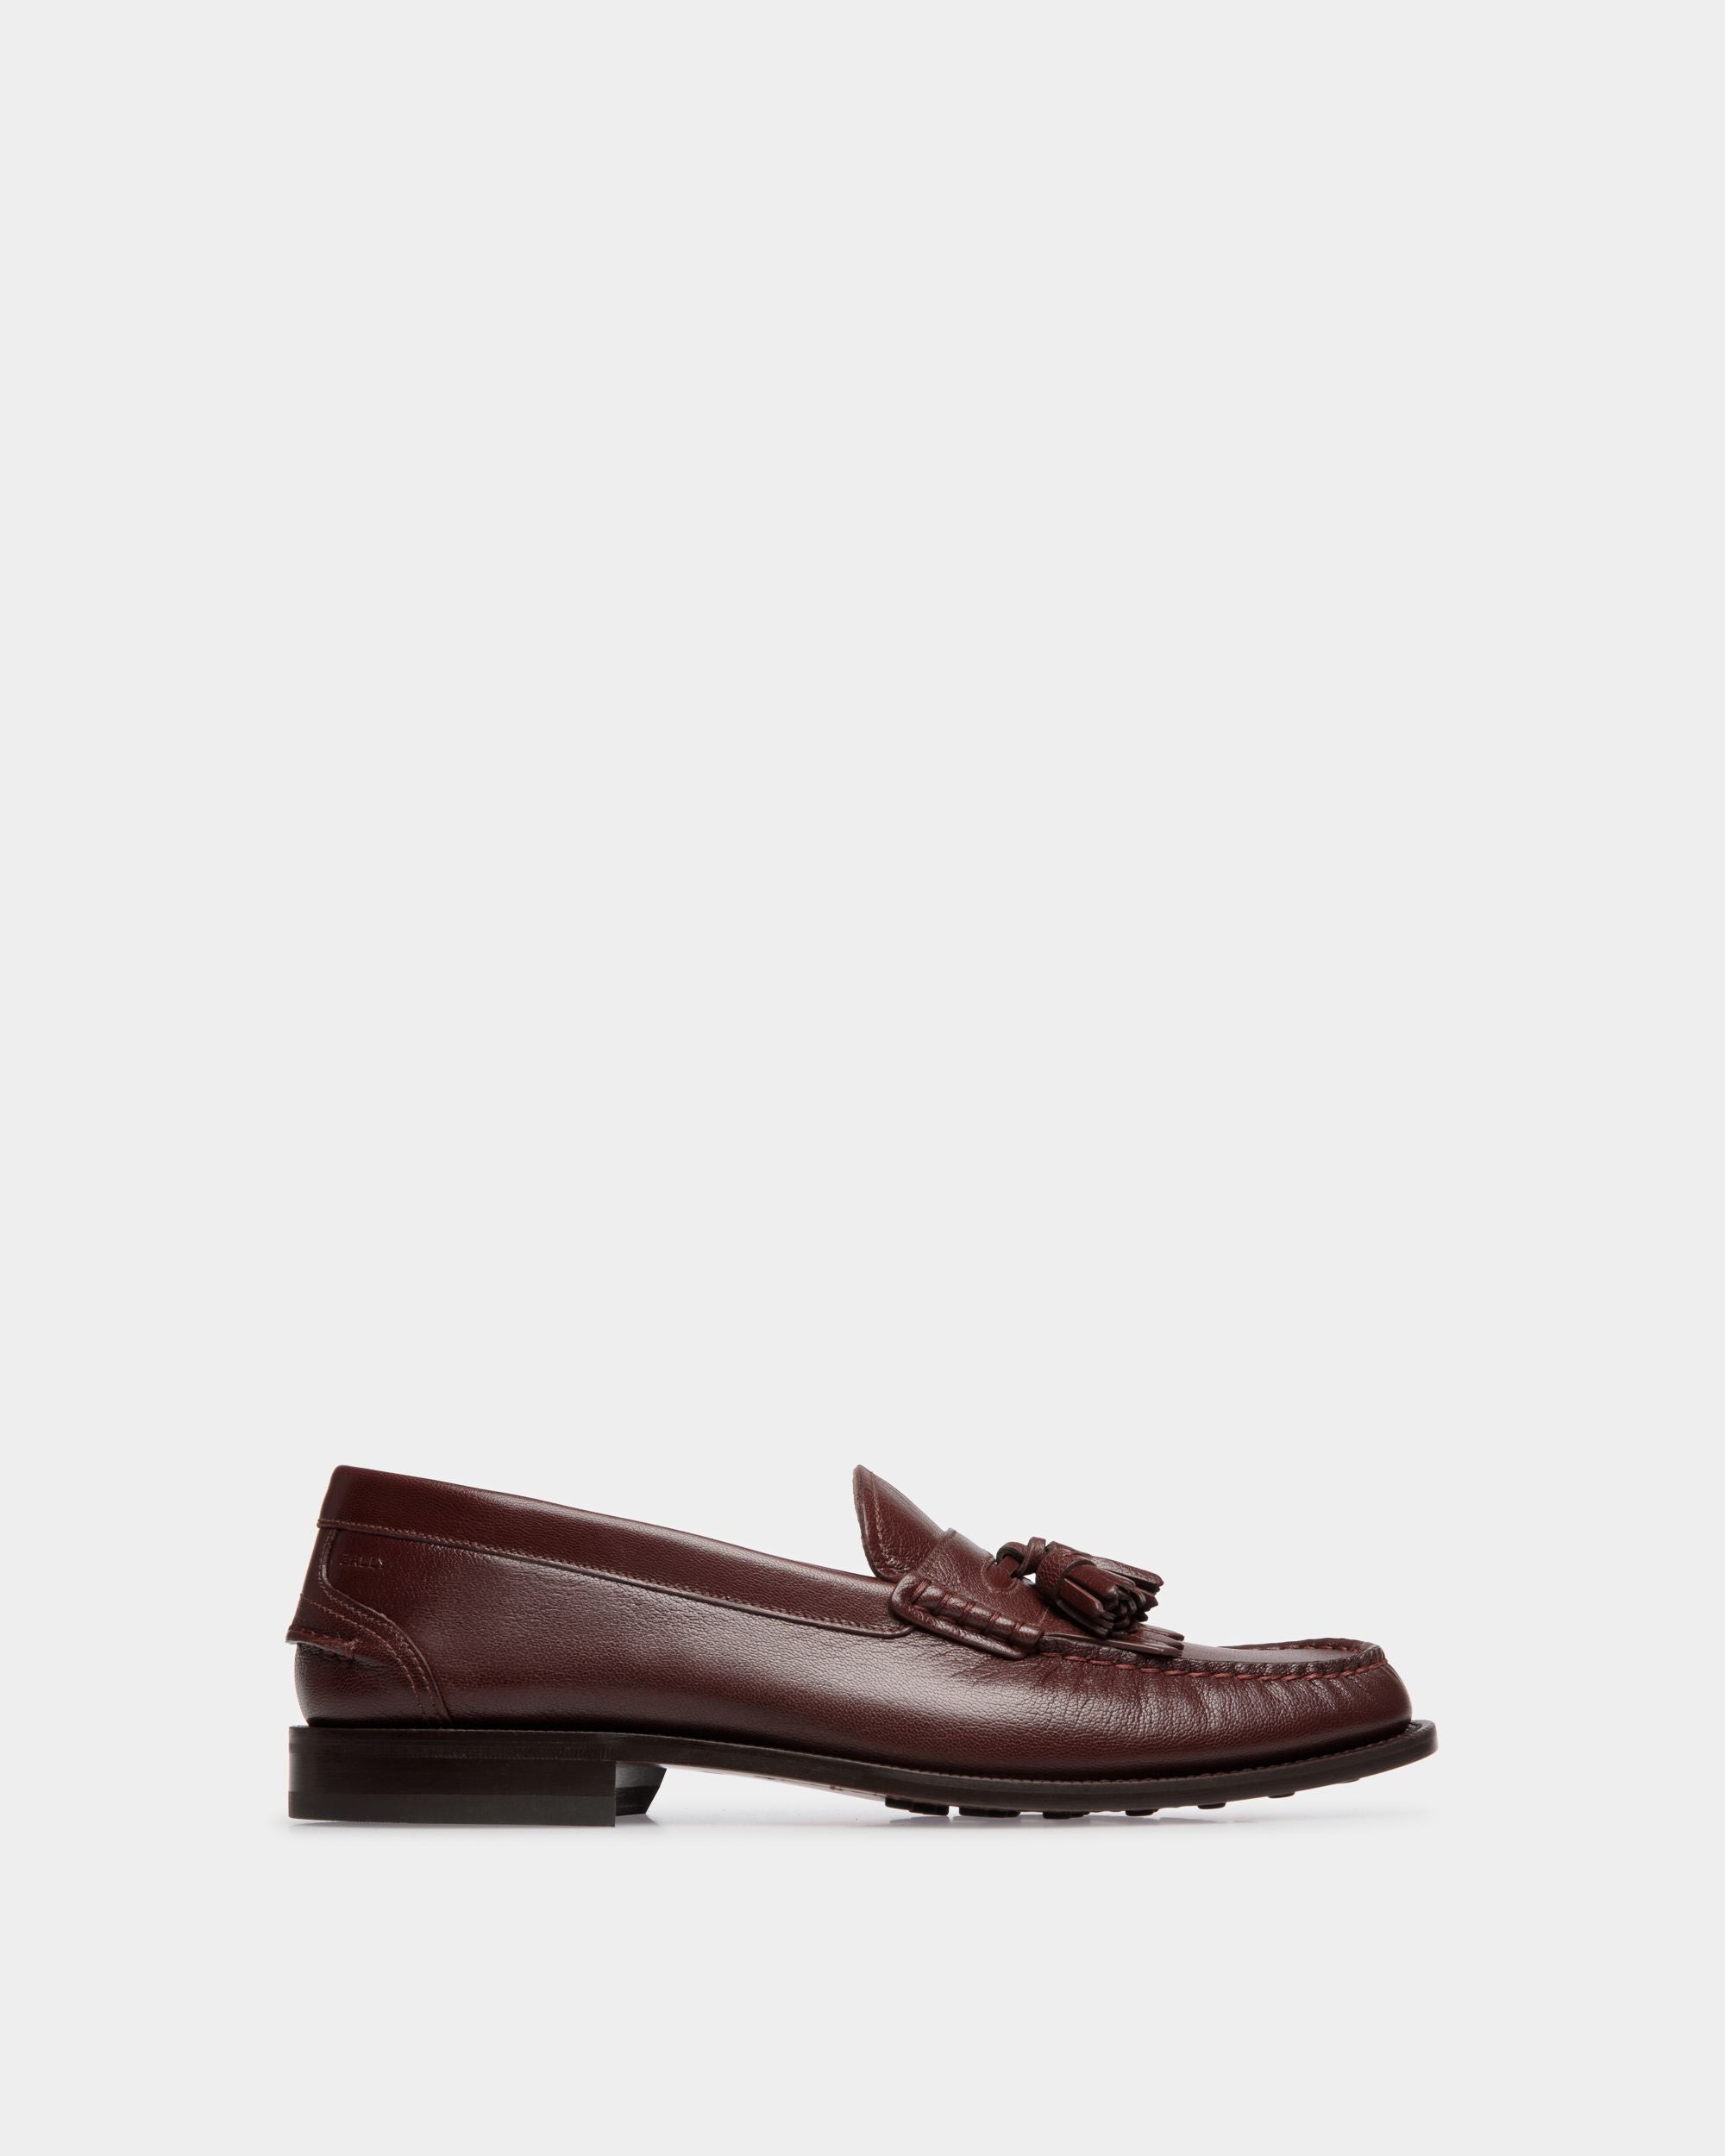 Oregon | Loafer für Herren aus genarbtem Leder in Kastanienbraun | Bally | Still Life Seite